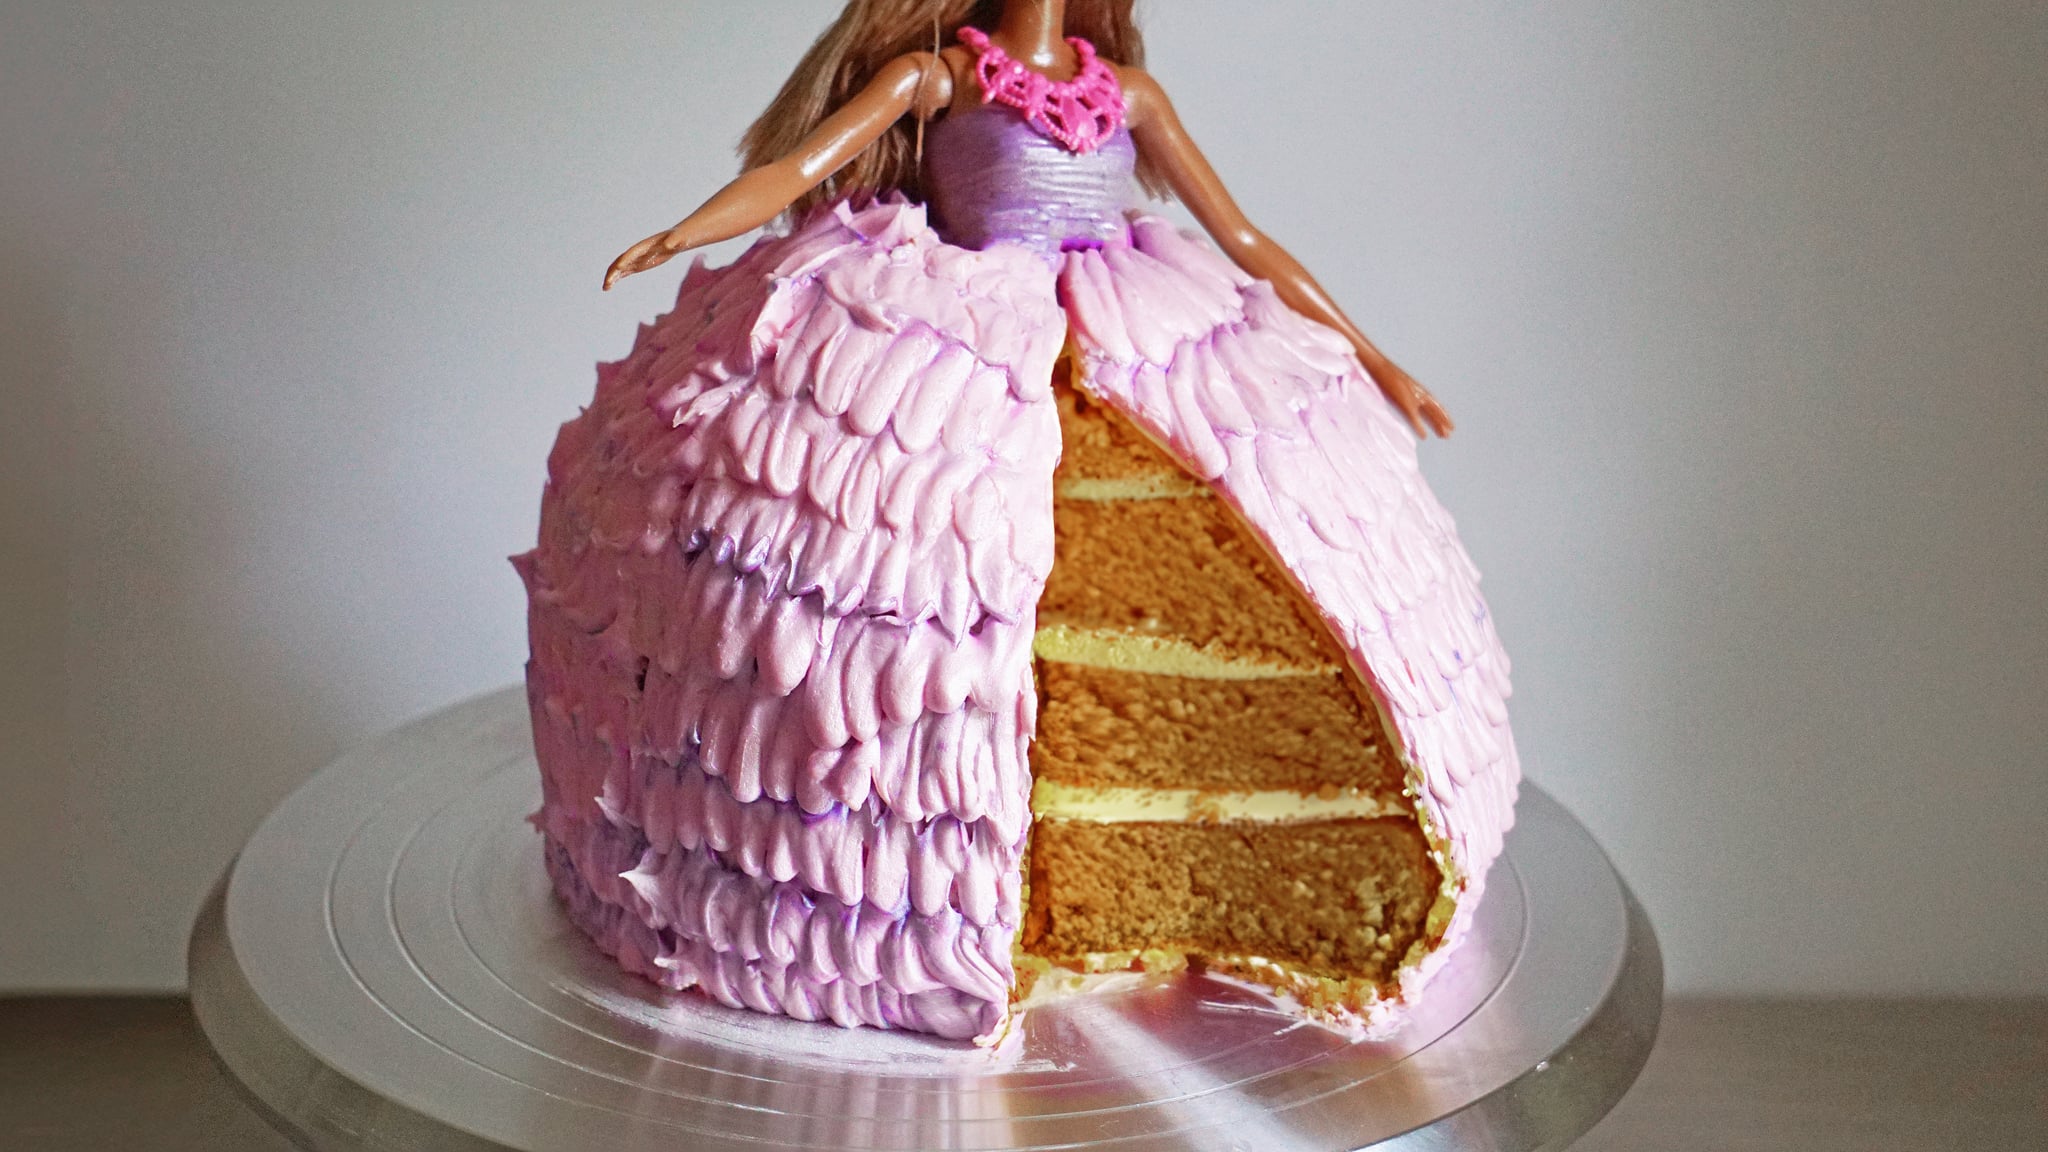 Barbie Doll Cake Recipe